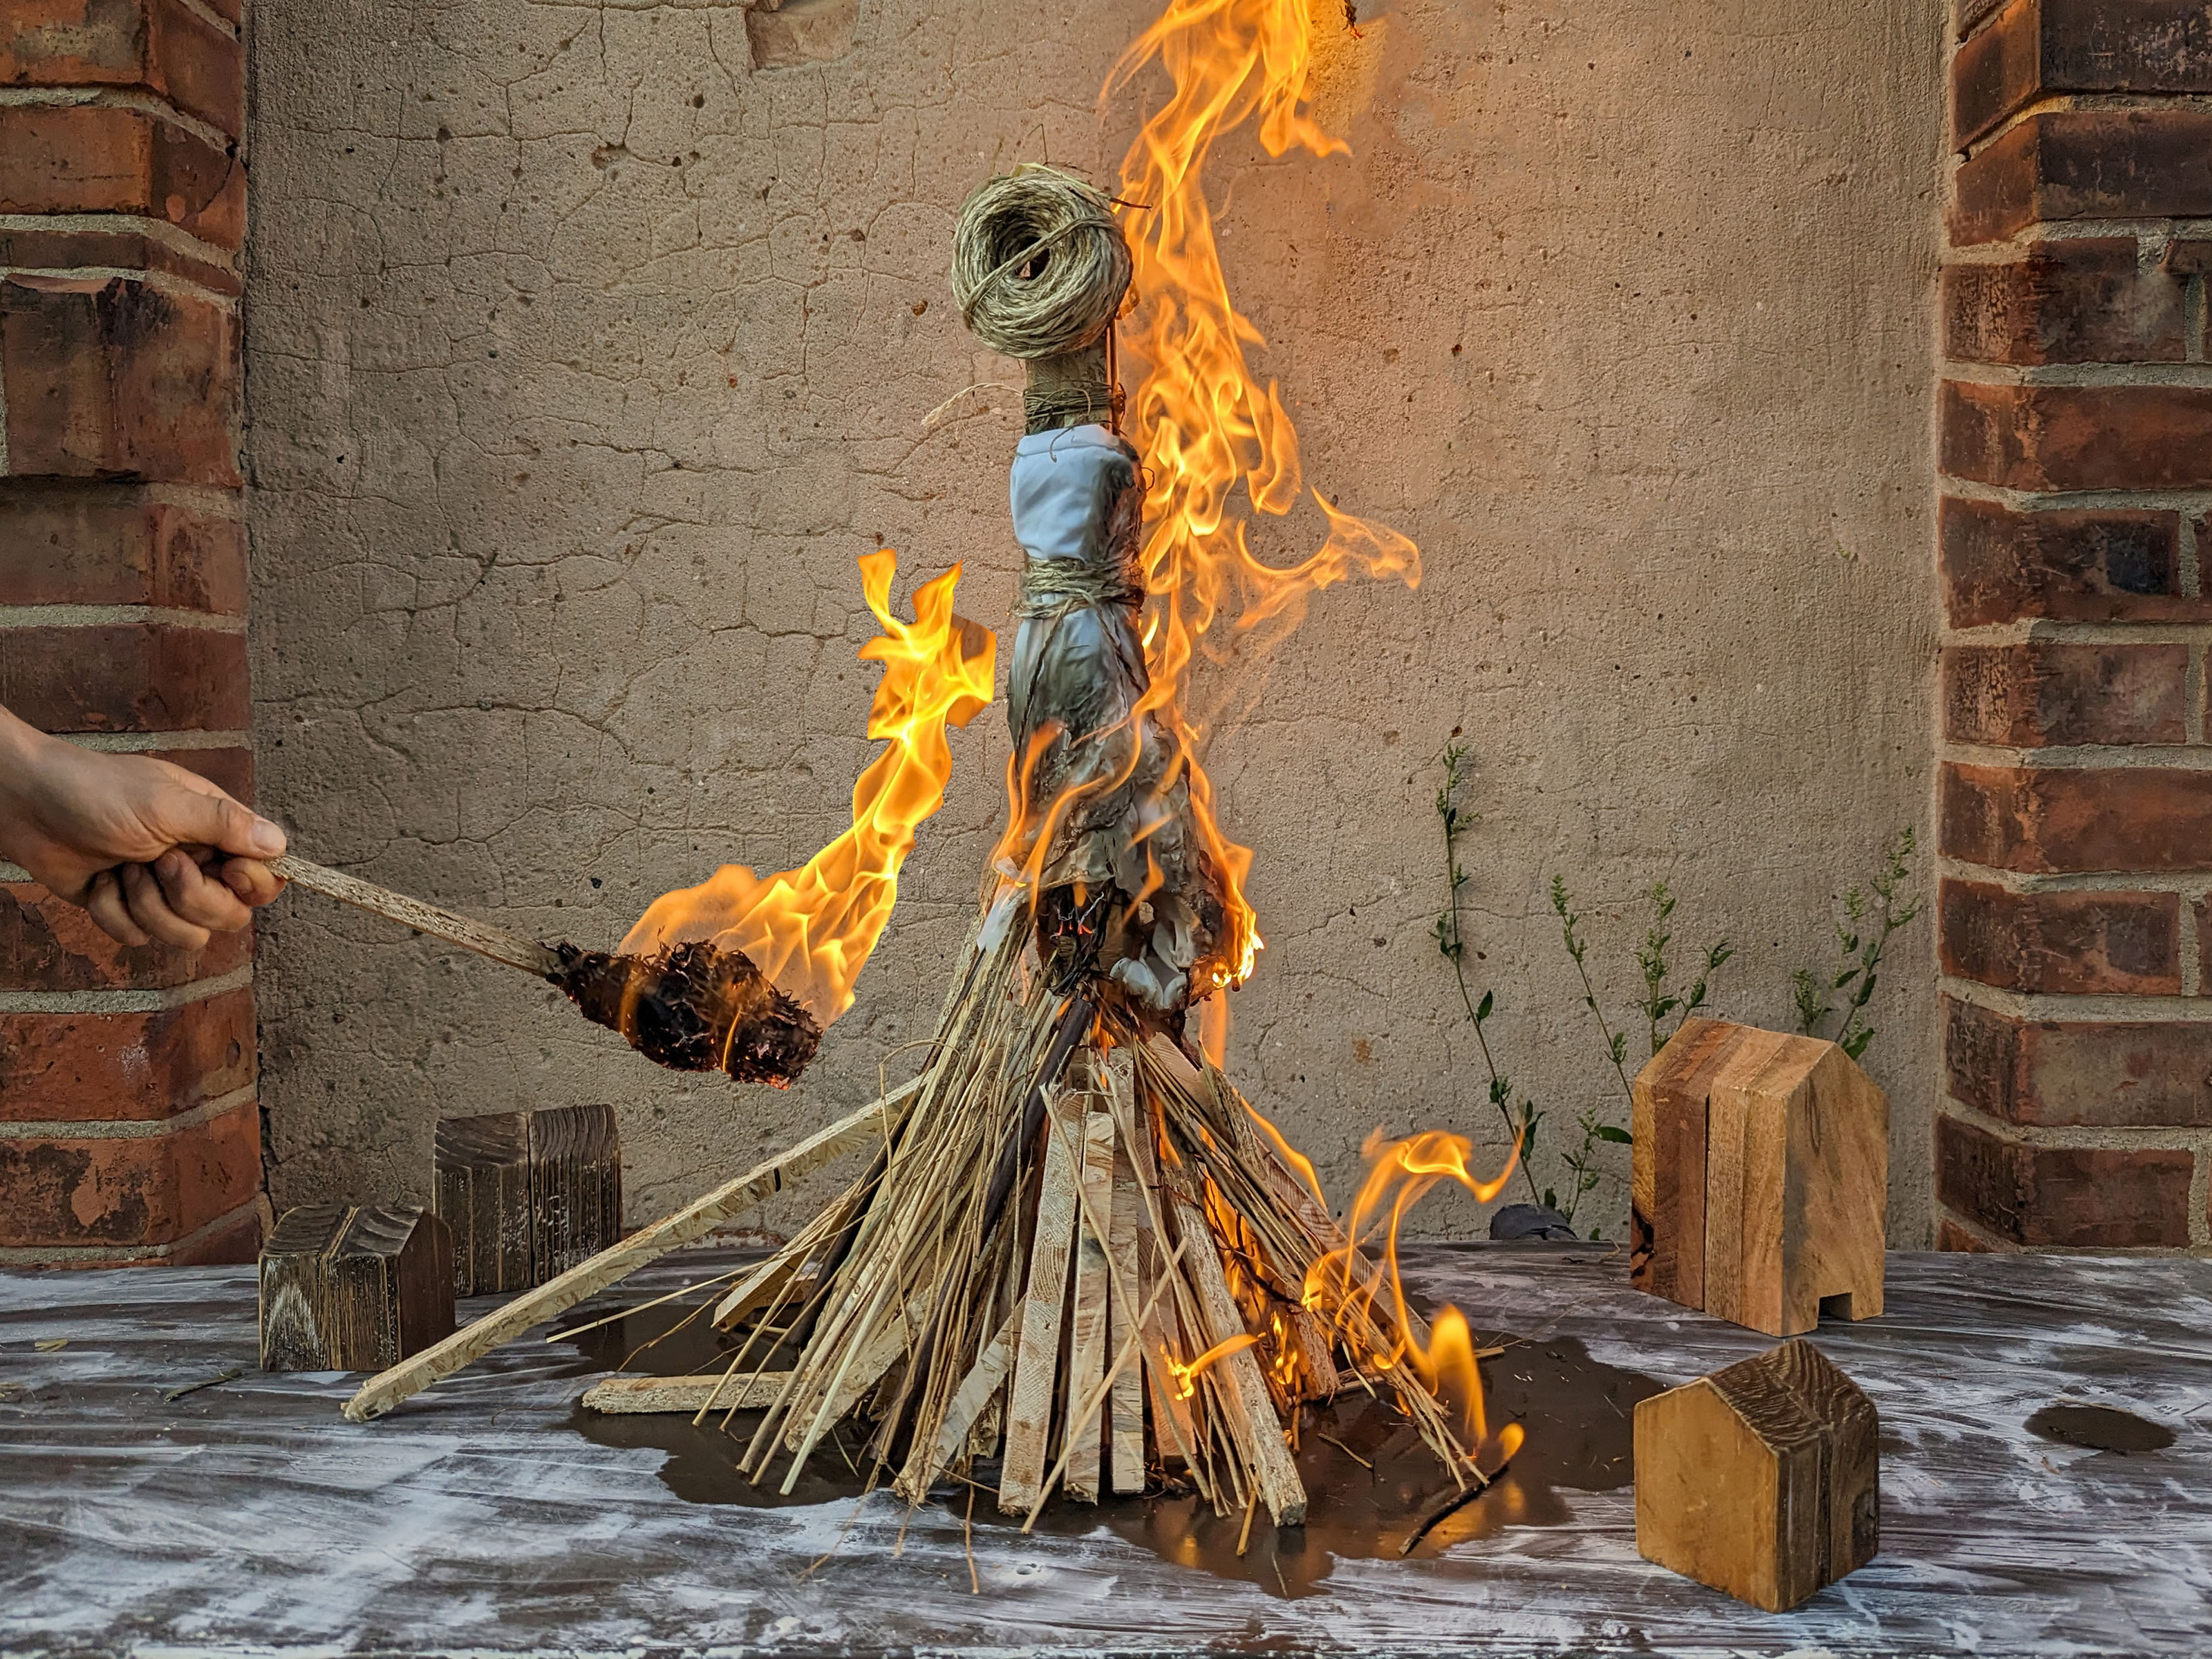 Von links ragt eine menschliche Hand mit Holzfackel ins Bild. Sie zündet einen Holzhaufen mit einer Strohpuppe an. Der Haufen und die Figur brennen lichterloh.